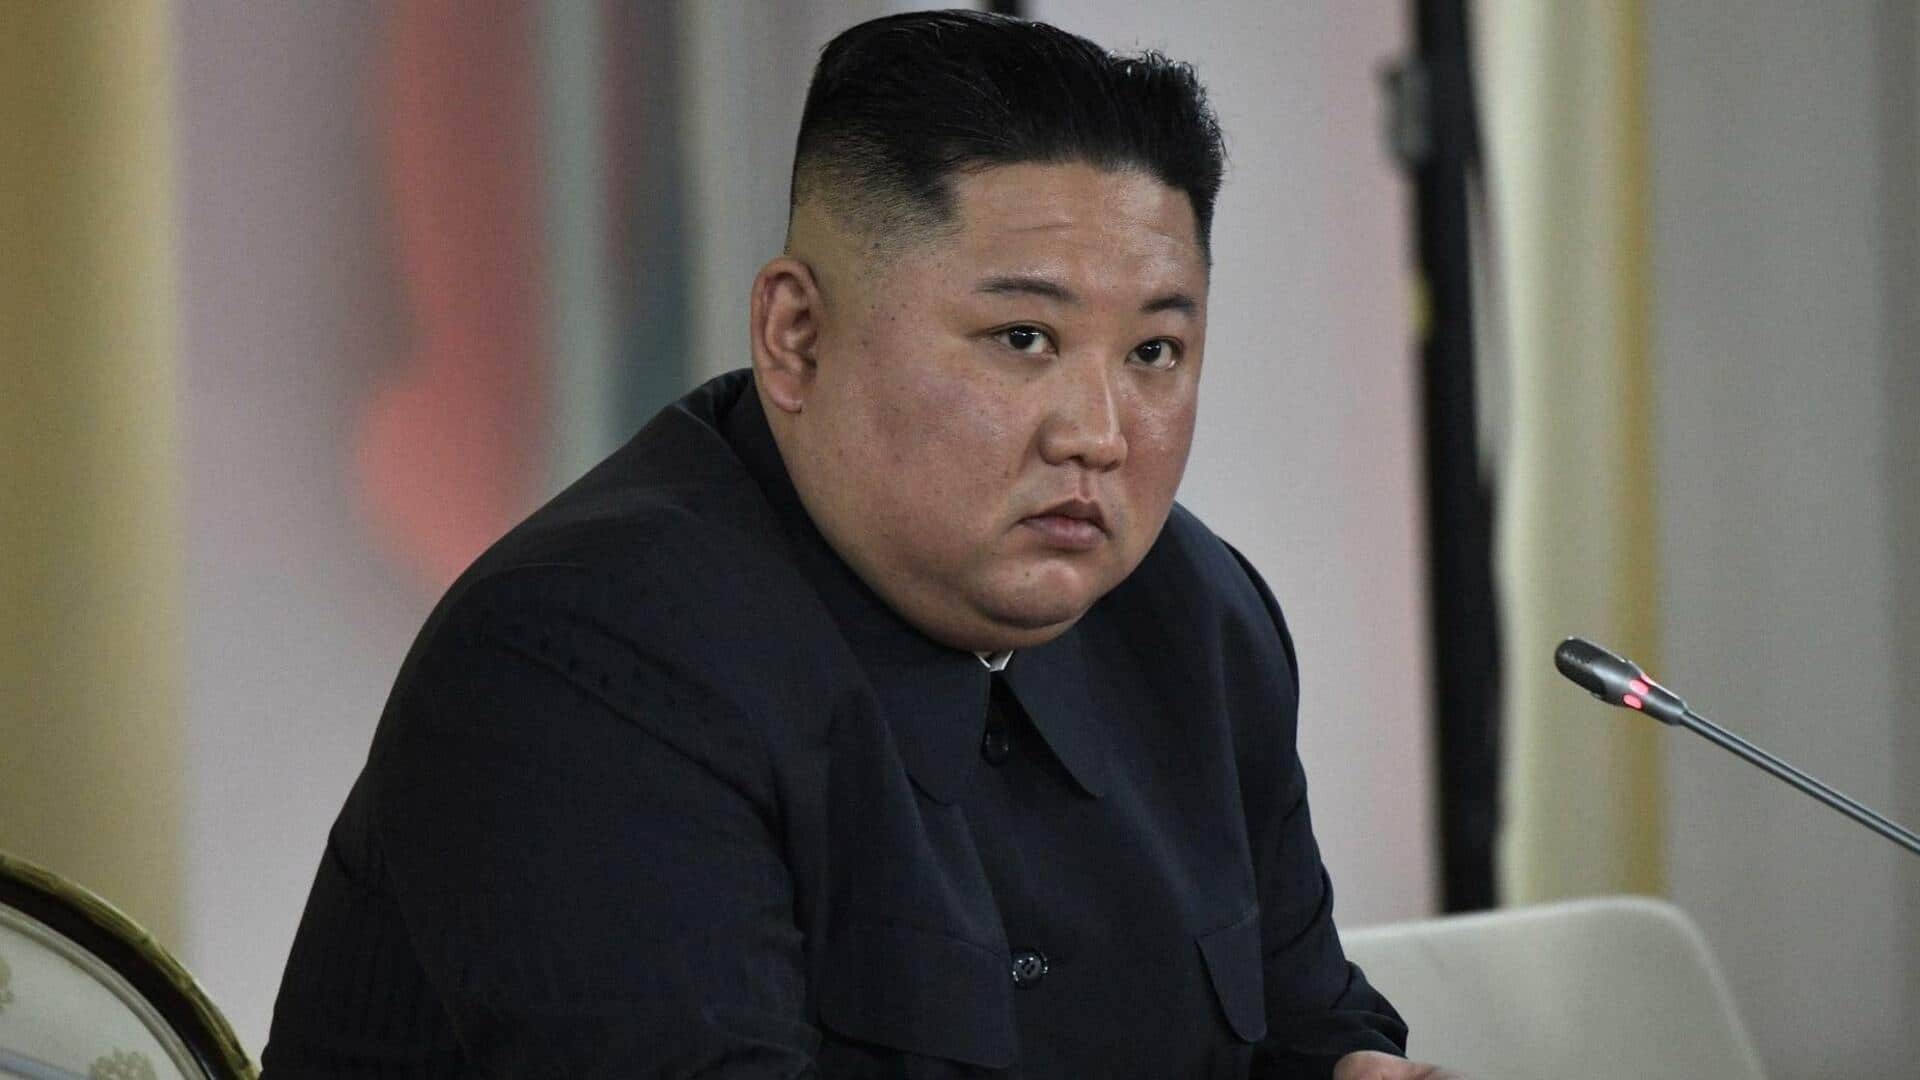 उत्तर कोरिया: किम जोंग उन की बेटी जैसे नाम वाली महिलाओं को बदलने होंगे अपने नाम